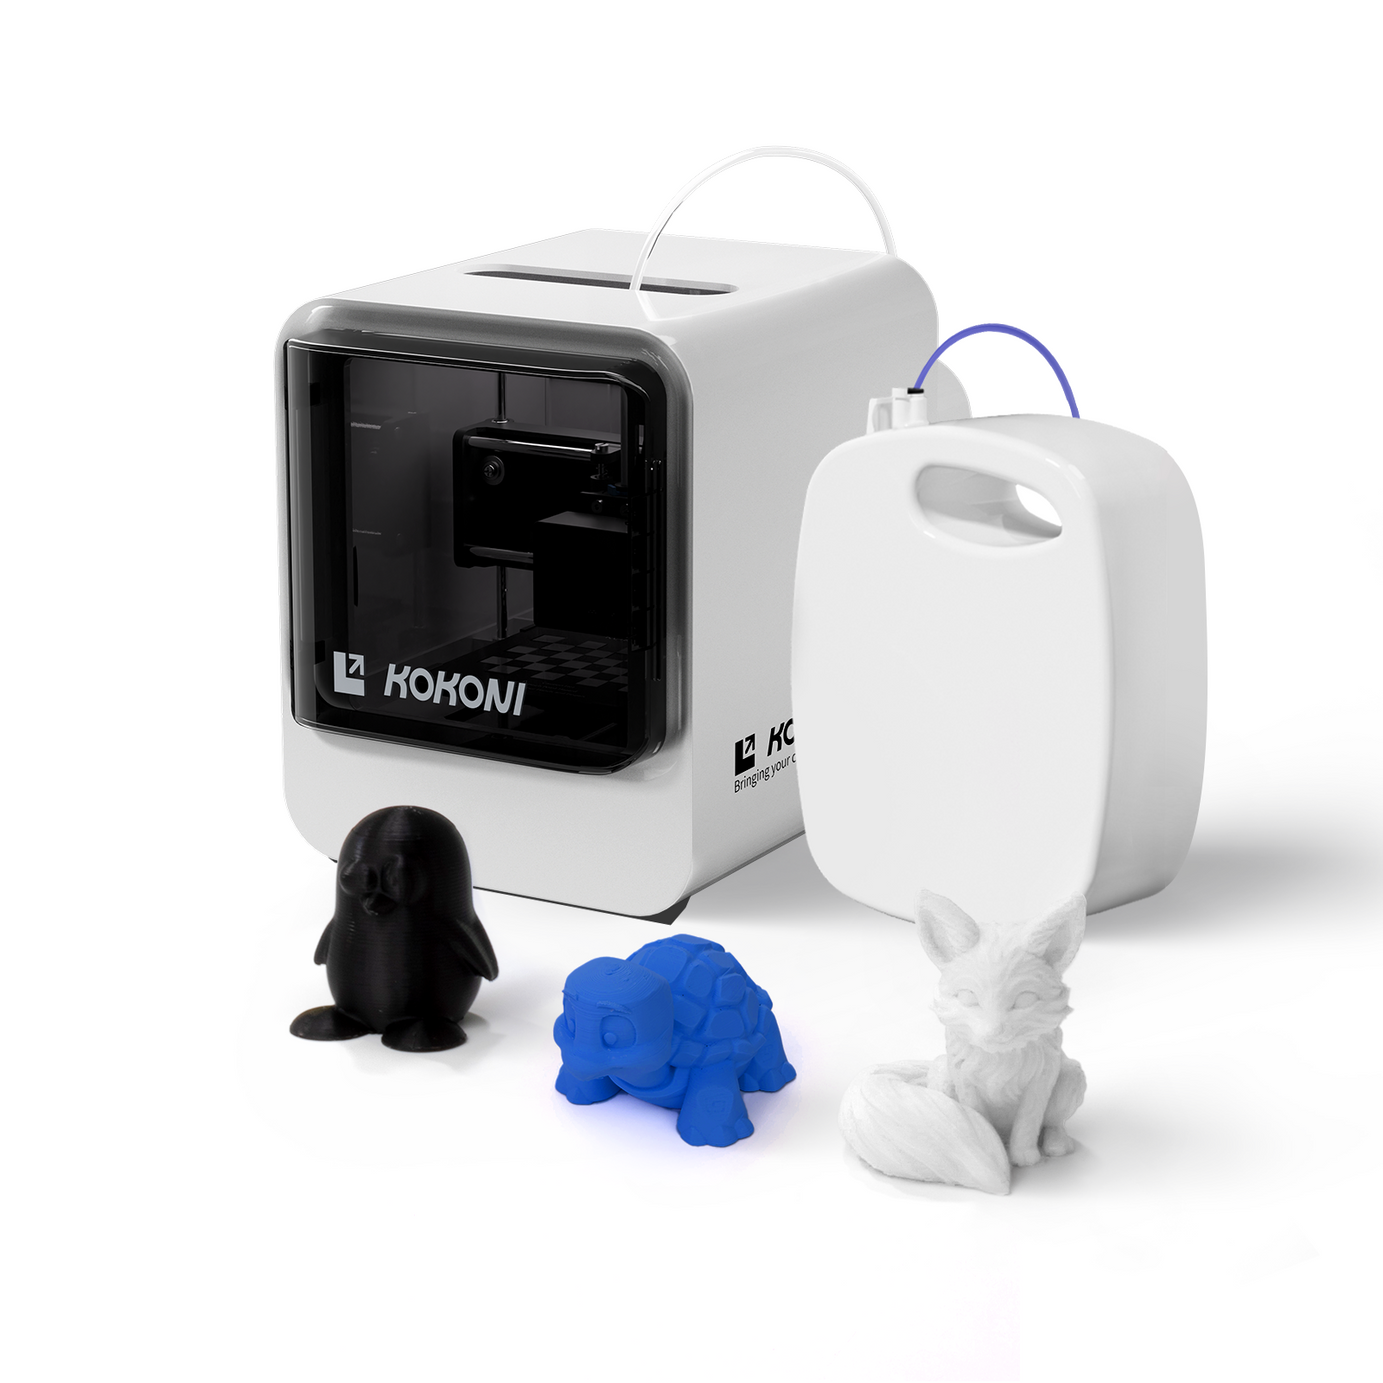 Snow World Pack: KOKONI EC1/EC2 3D Printer Plus Filaments White/ Black/ Blue